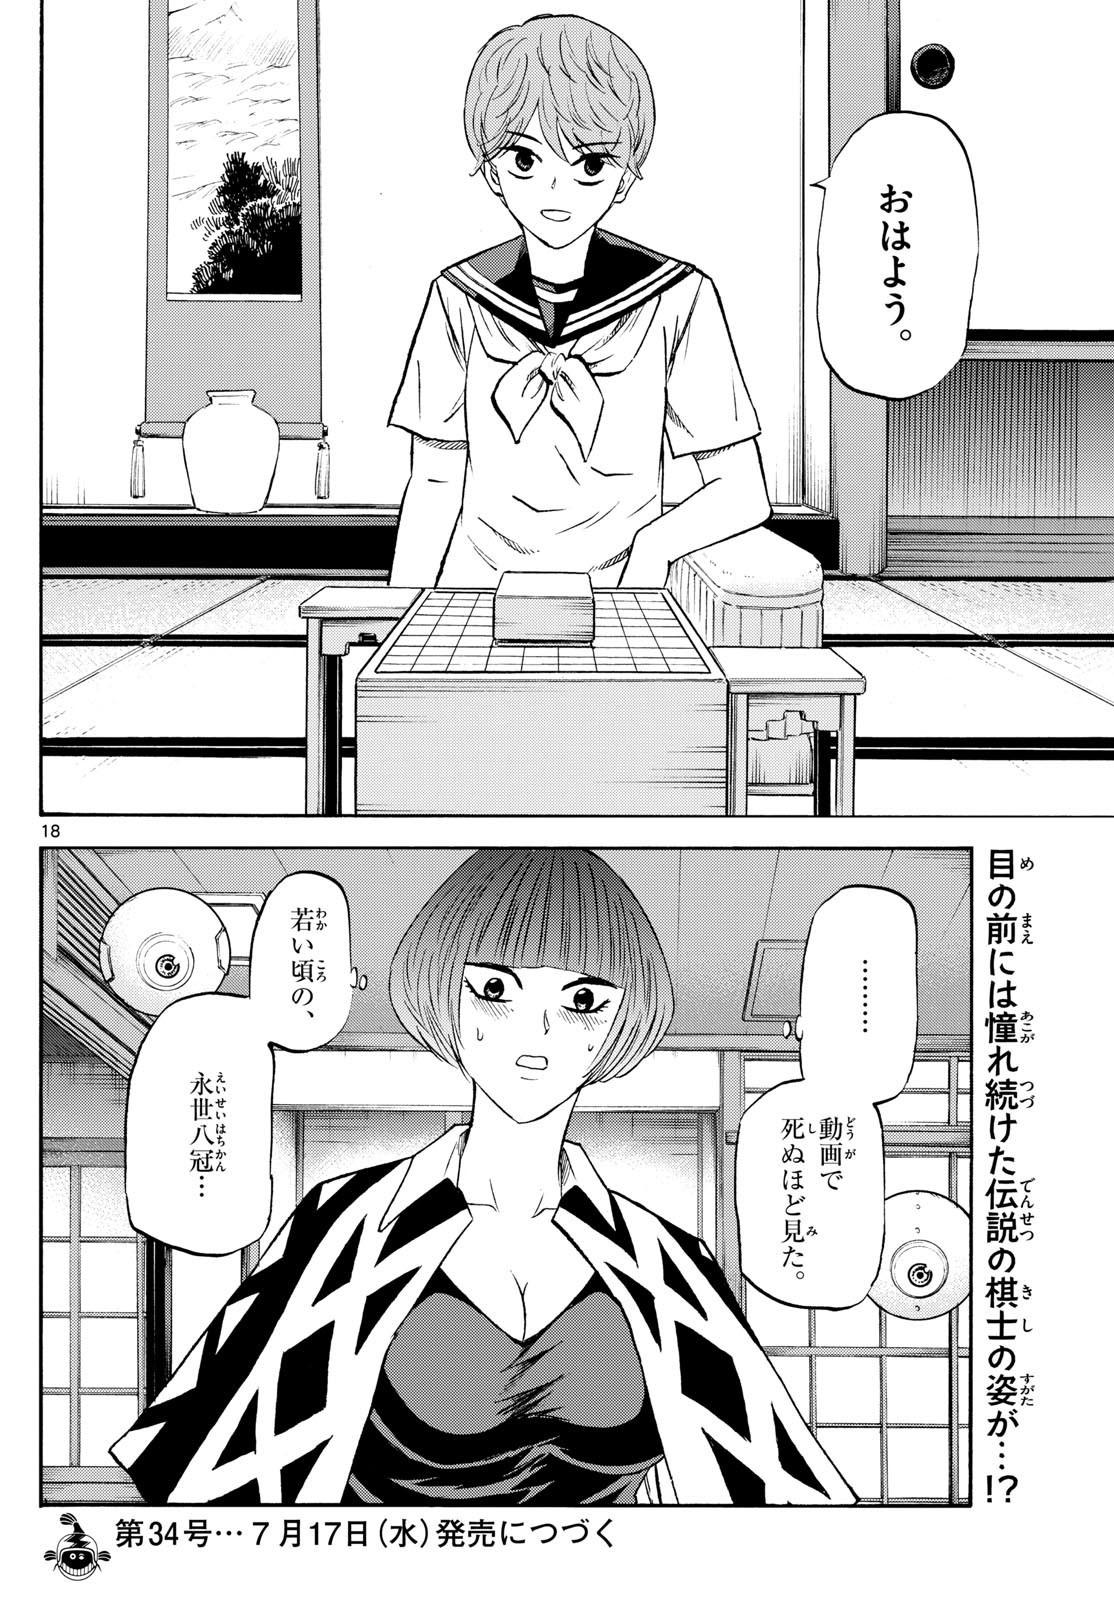 Tatsu to Ichigo - Chapter 199 - Page 18